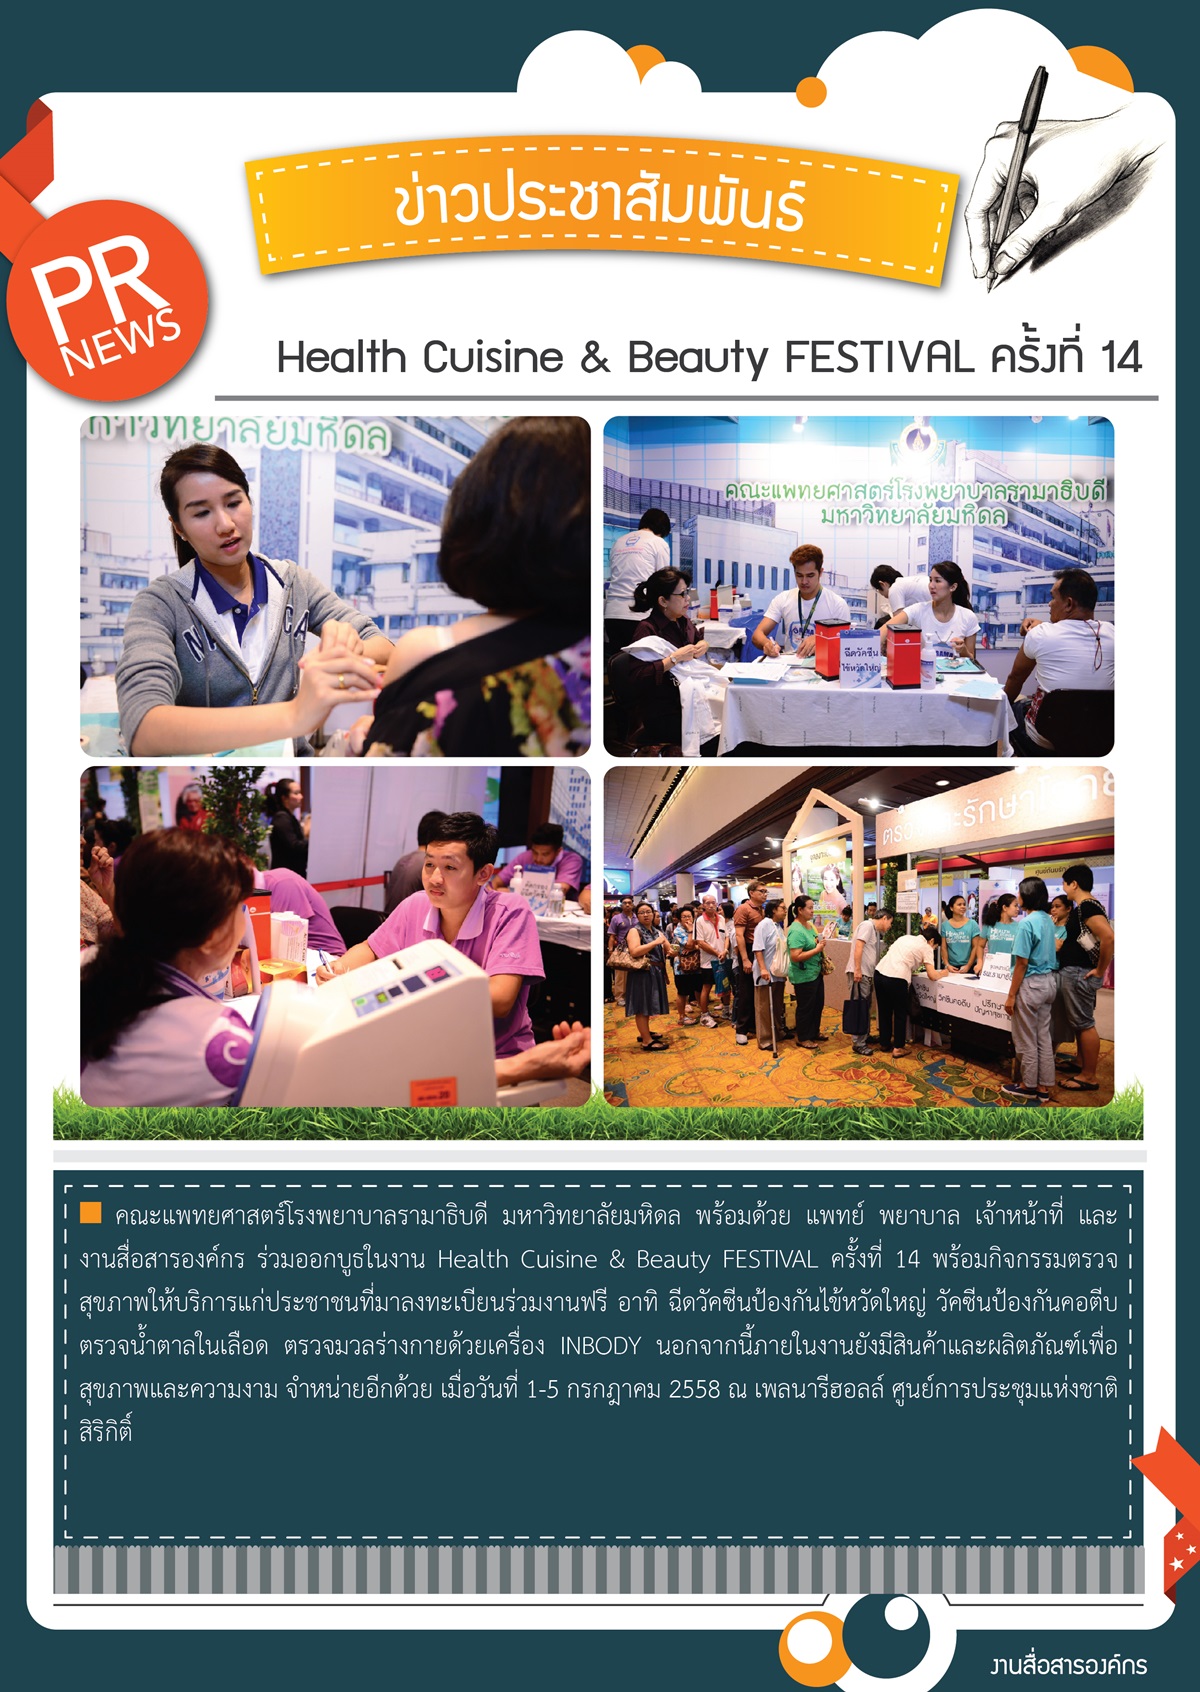 Health Cuisine & Beauty FESTIVAL ครั้งที่ 14 